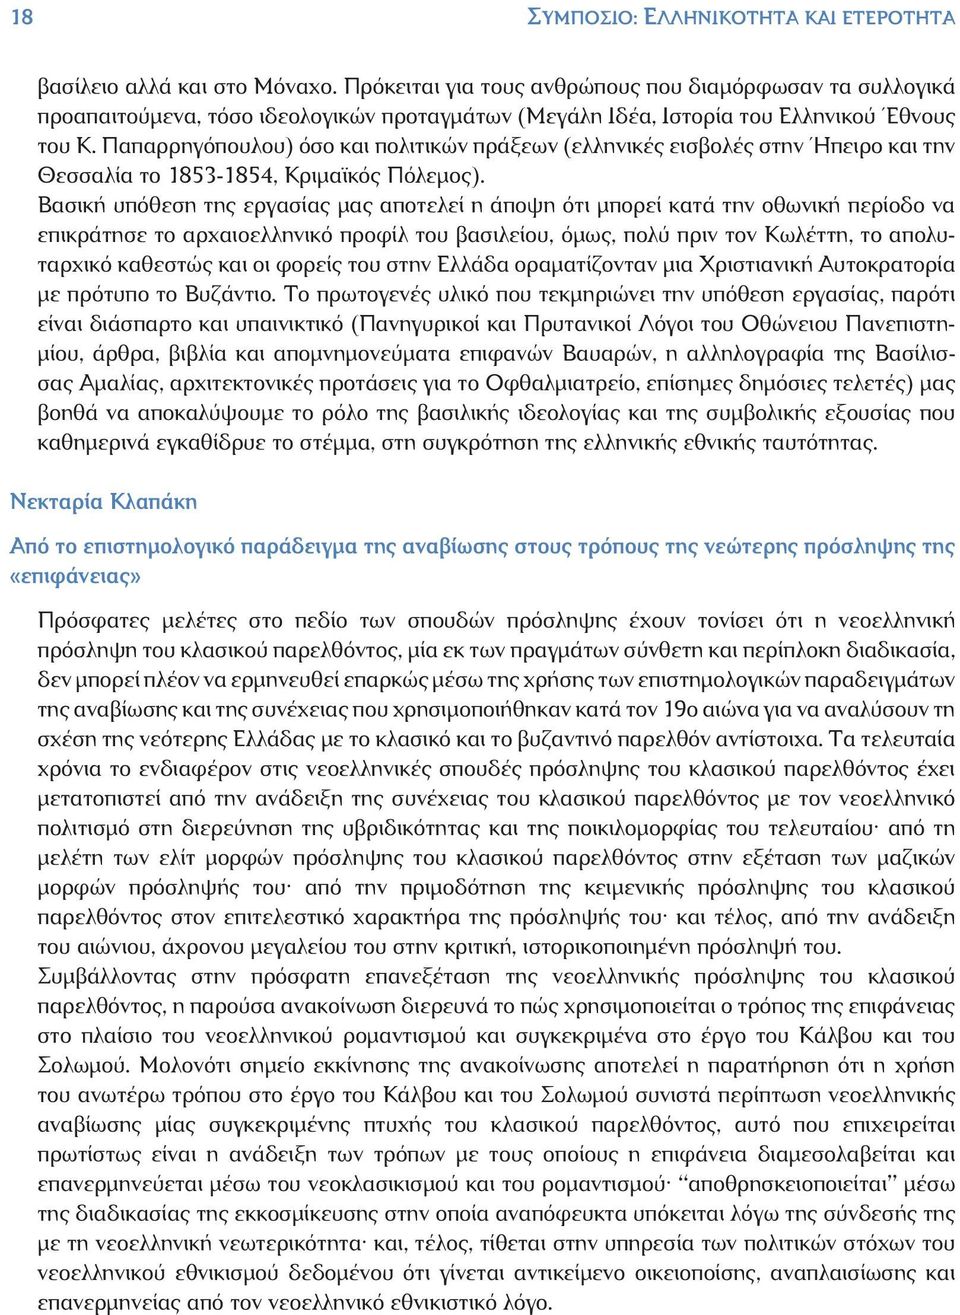 Παπαρρηγόπουλου) όσο και πολιτικών πράξεων (ελληνικές εισβολές στην Ήπειρο και την Θεσσαλία το 1853-1854, Κριμαϊκός Πόλεμος).